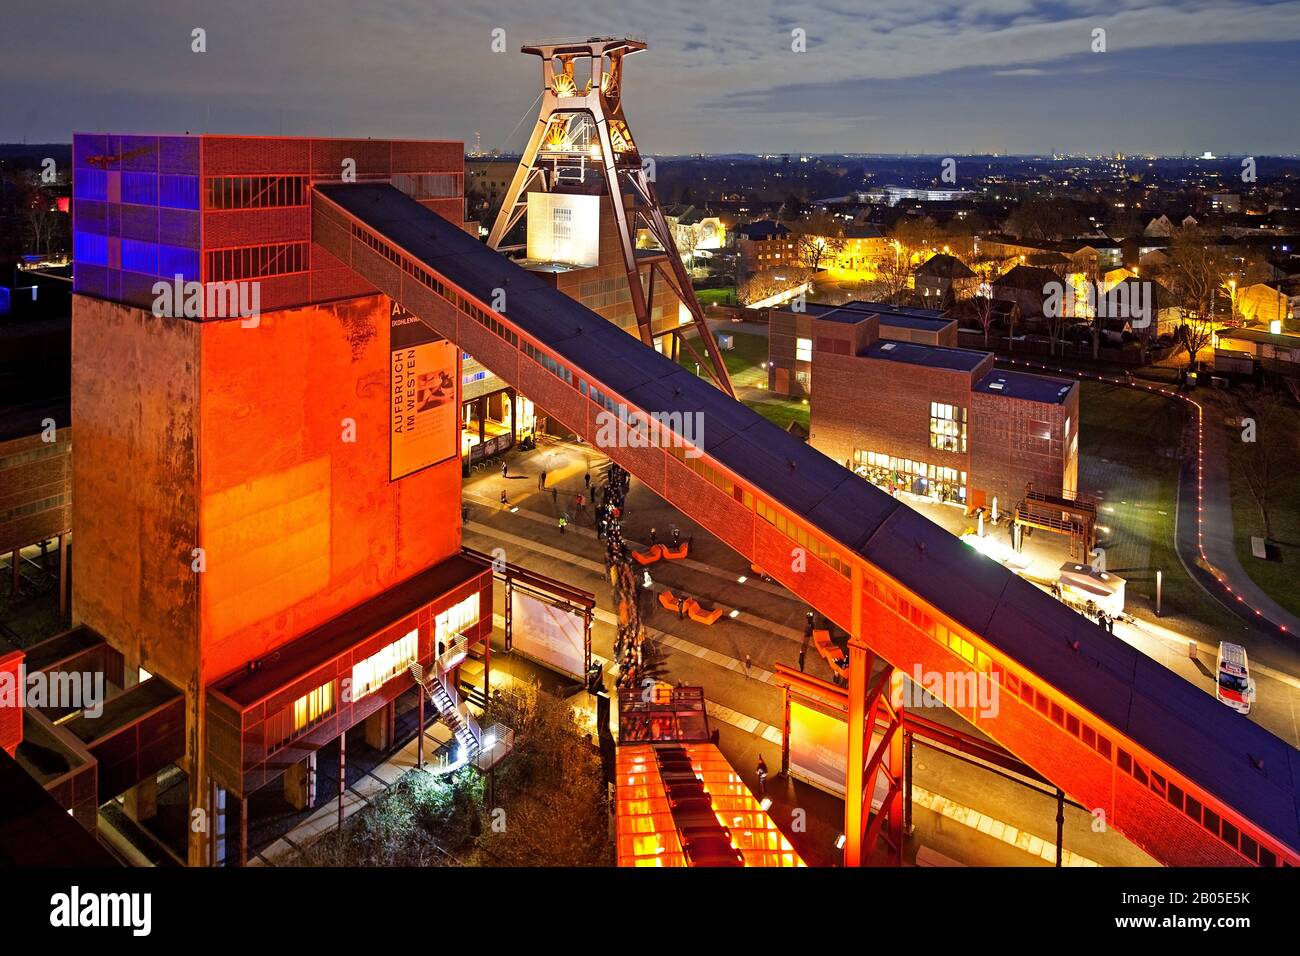 Copricapo illuminato di Schacht XII del Complesso industriale della miniera di carbone di Zollverein in serata, Germania, Renania settentrionale-Vestfalia, zona della Ruhr, Essen Foto Stock